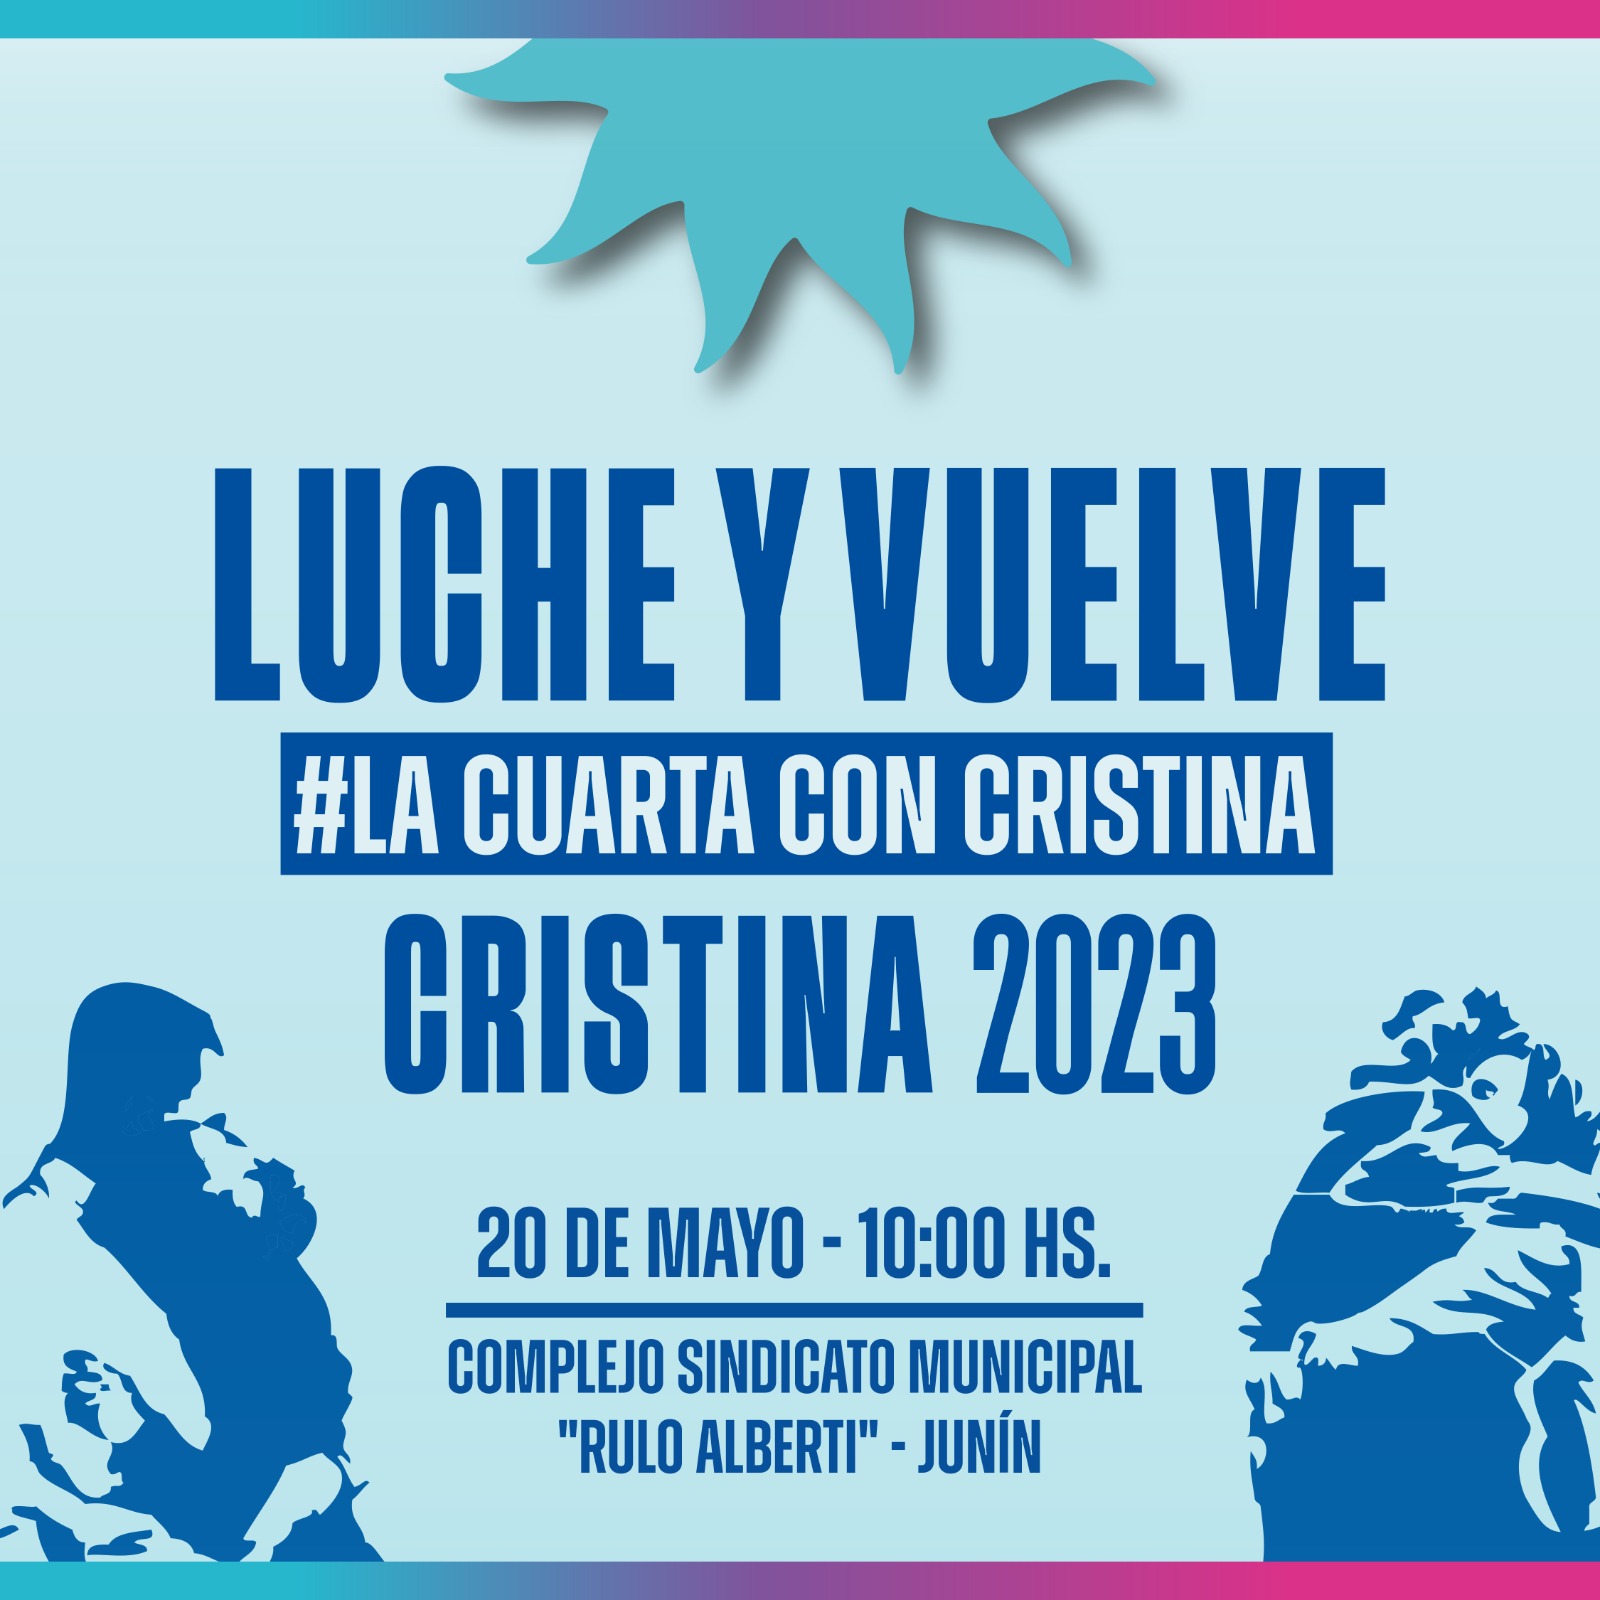 En Junín, este sábado 20 de mayo: "La Militancia debate y se organiza para romper la proscripción" hacia Cristina Fernández de Kirchner